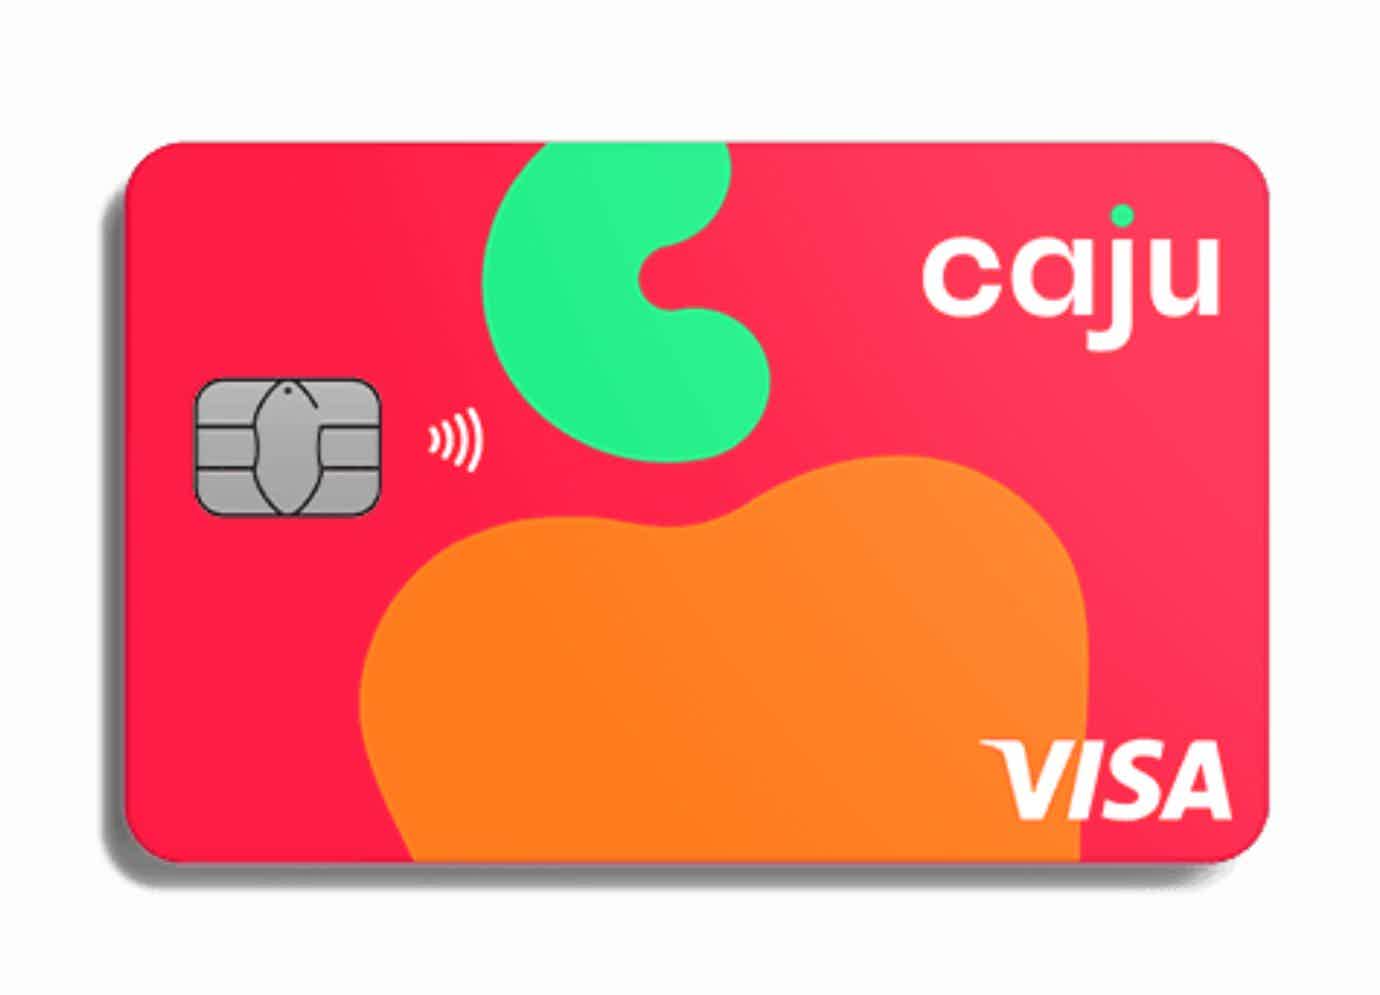 Cartão de crédito rosa com um desenho de um caju laranjado no centro